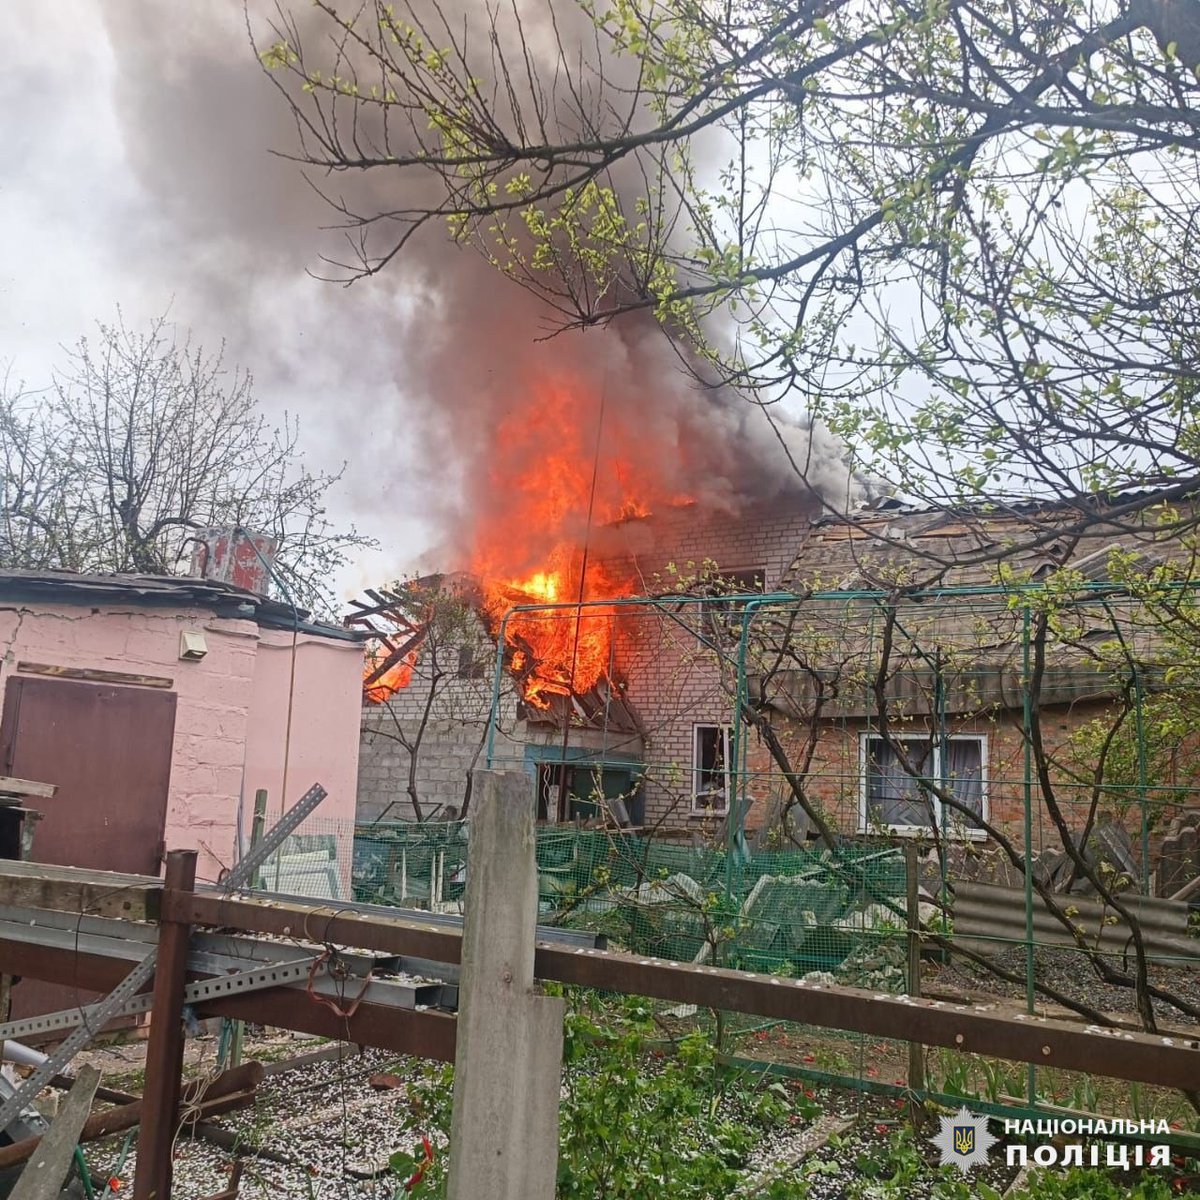 Drie kinderen en nog een persoon raakten gewond als gevolg van een Russische luchtaanval in Derhachi in de regio Charkov